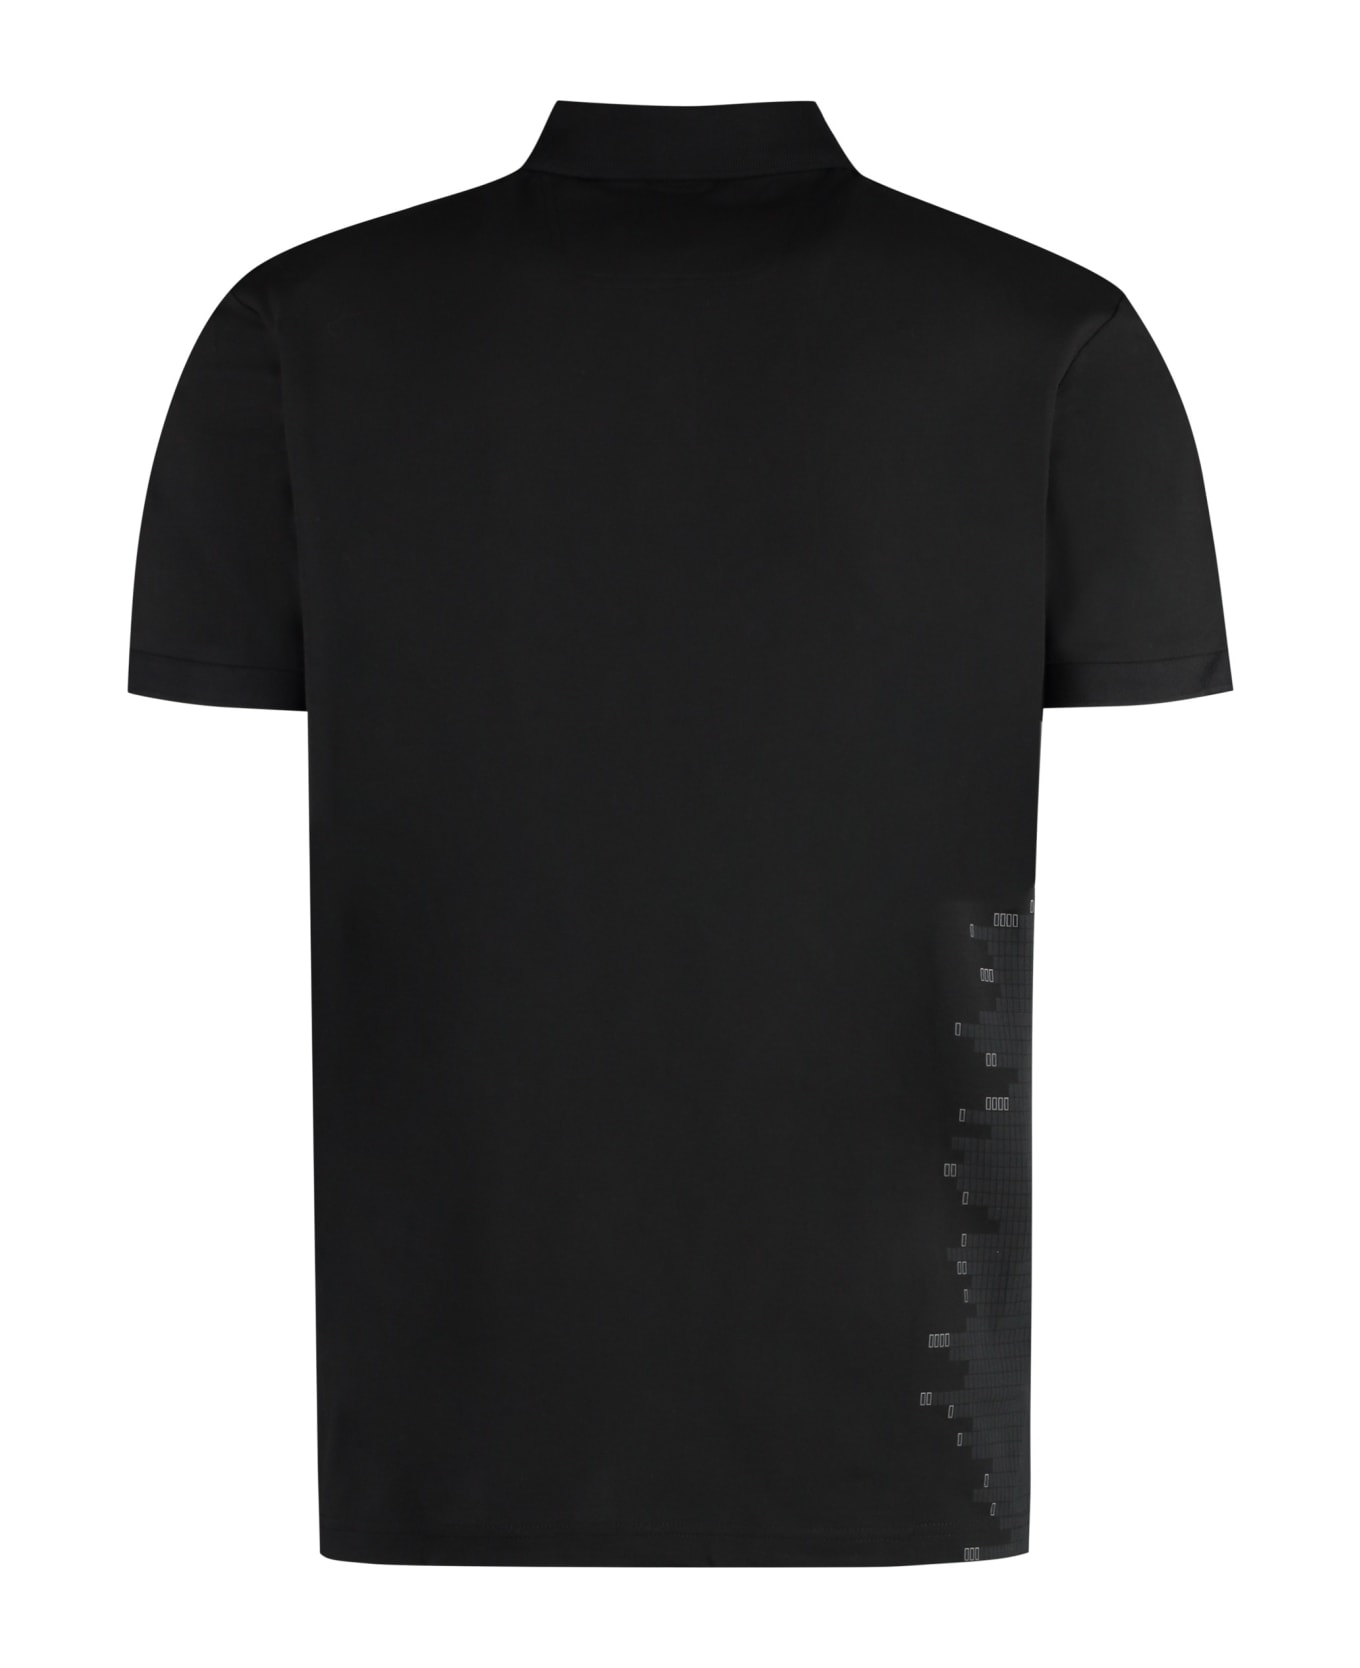 Hugo Boss Short Sleeve Cotton Pique Polo Shirt - black